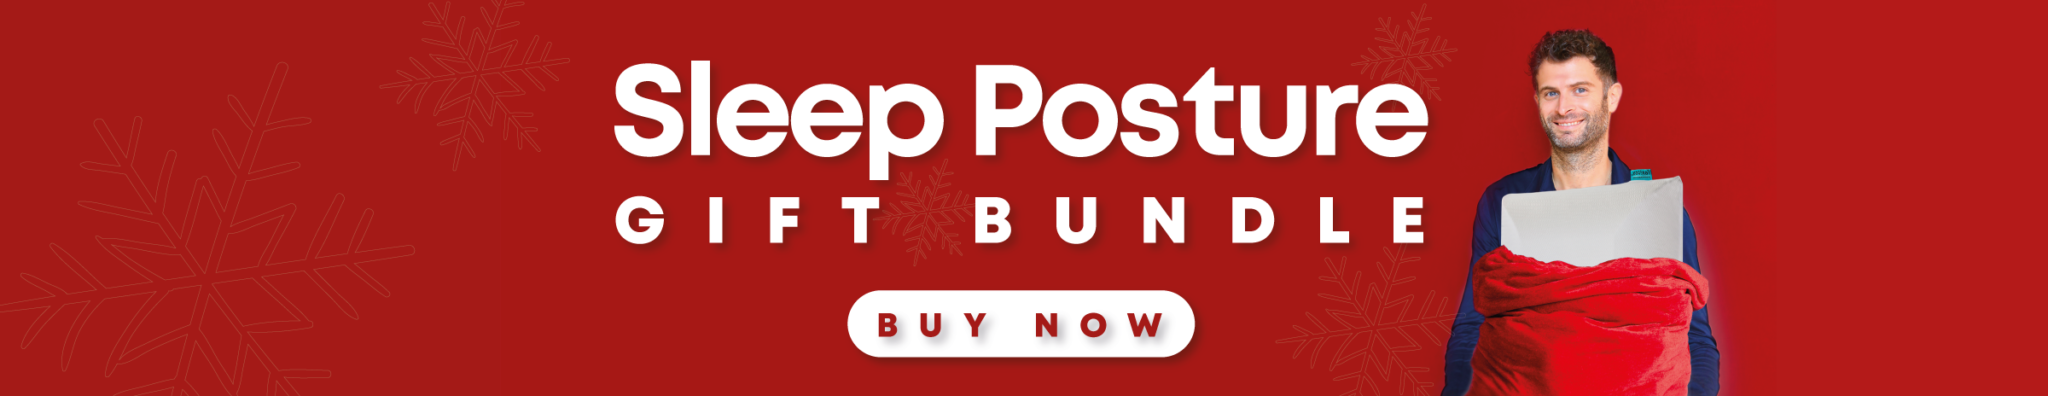 sleep posture gift bundle